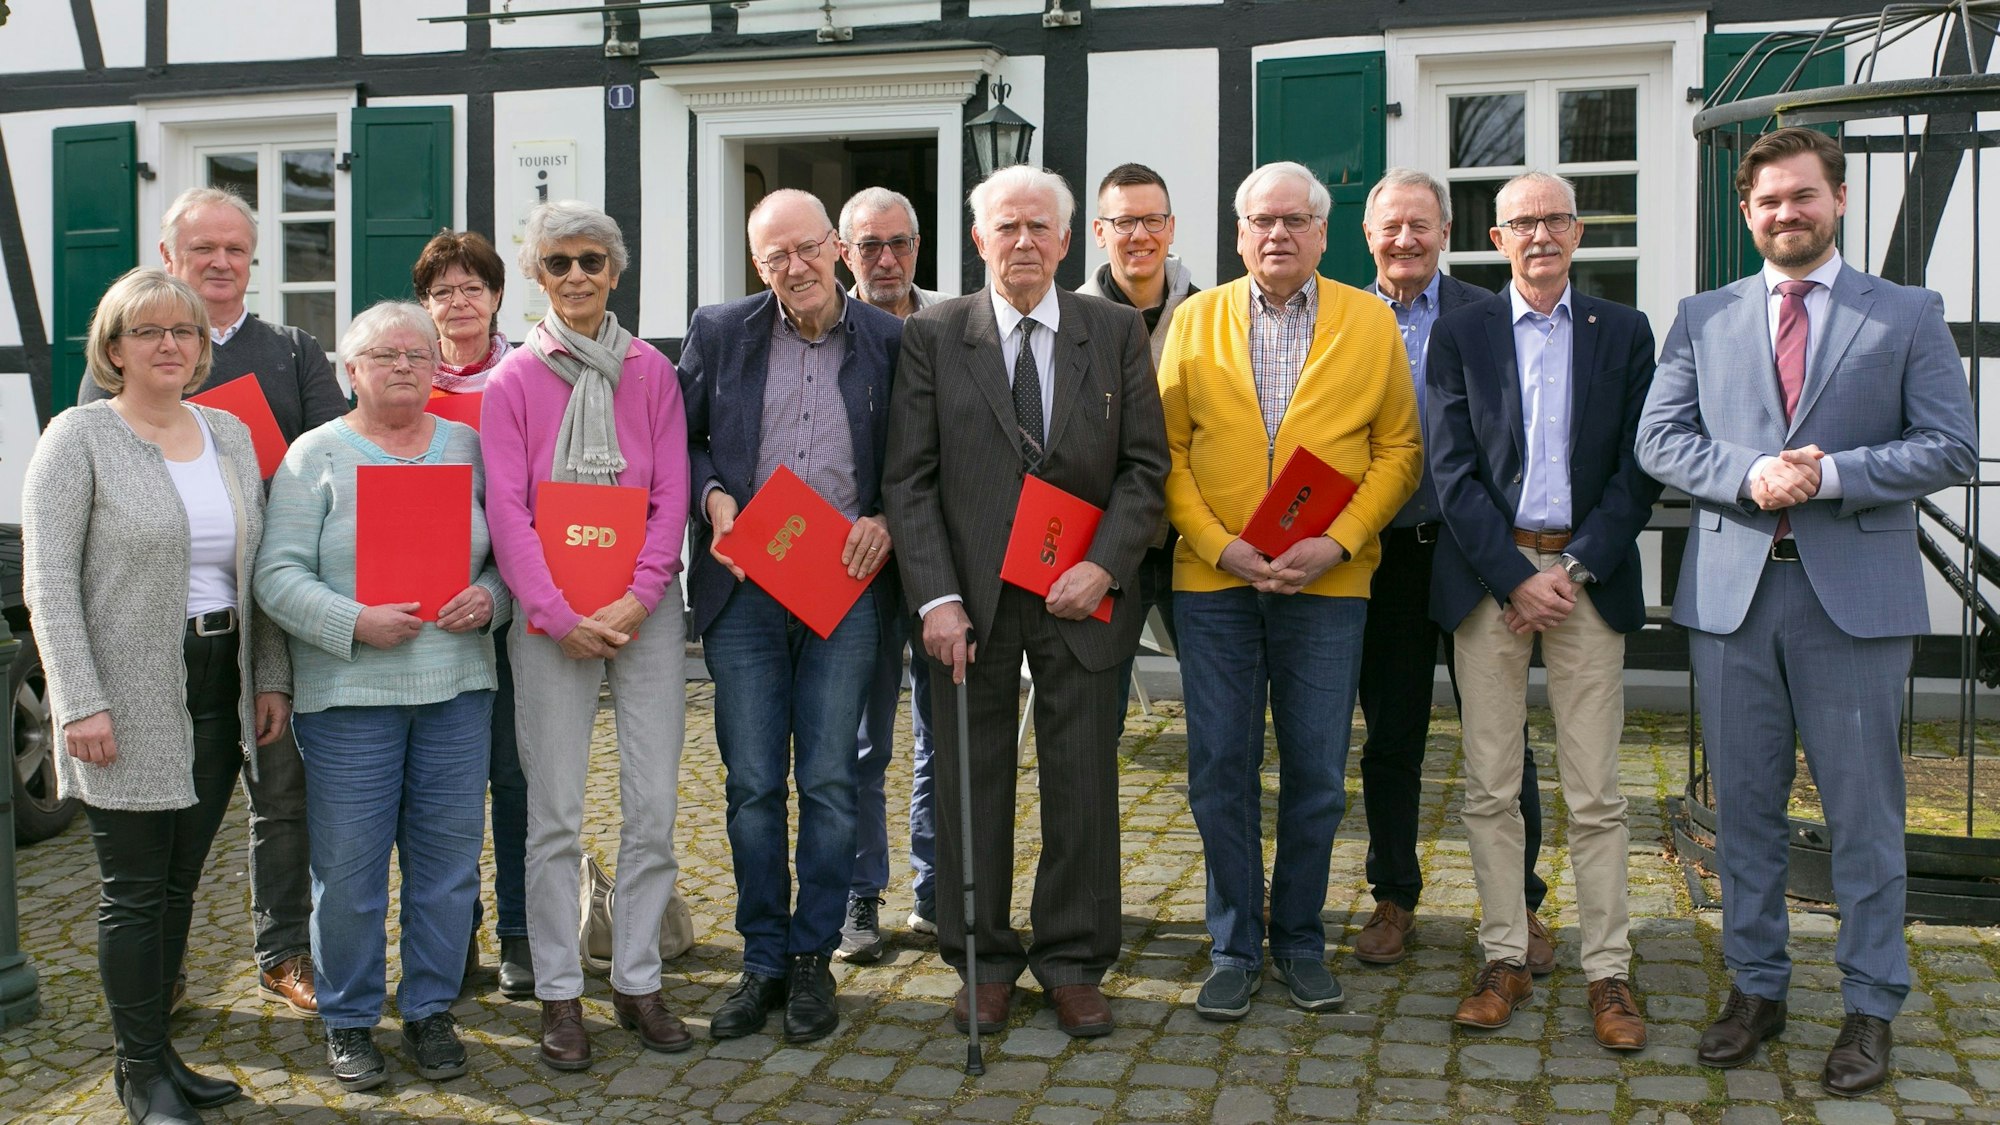 Eine Gruppe Männer und Frauen stehen in einer Reihe zusammen. Sie halten rote Urkunden in den Händen mit der Aufschrift „SPD“.